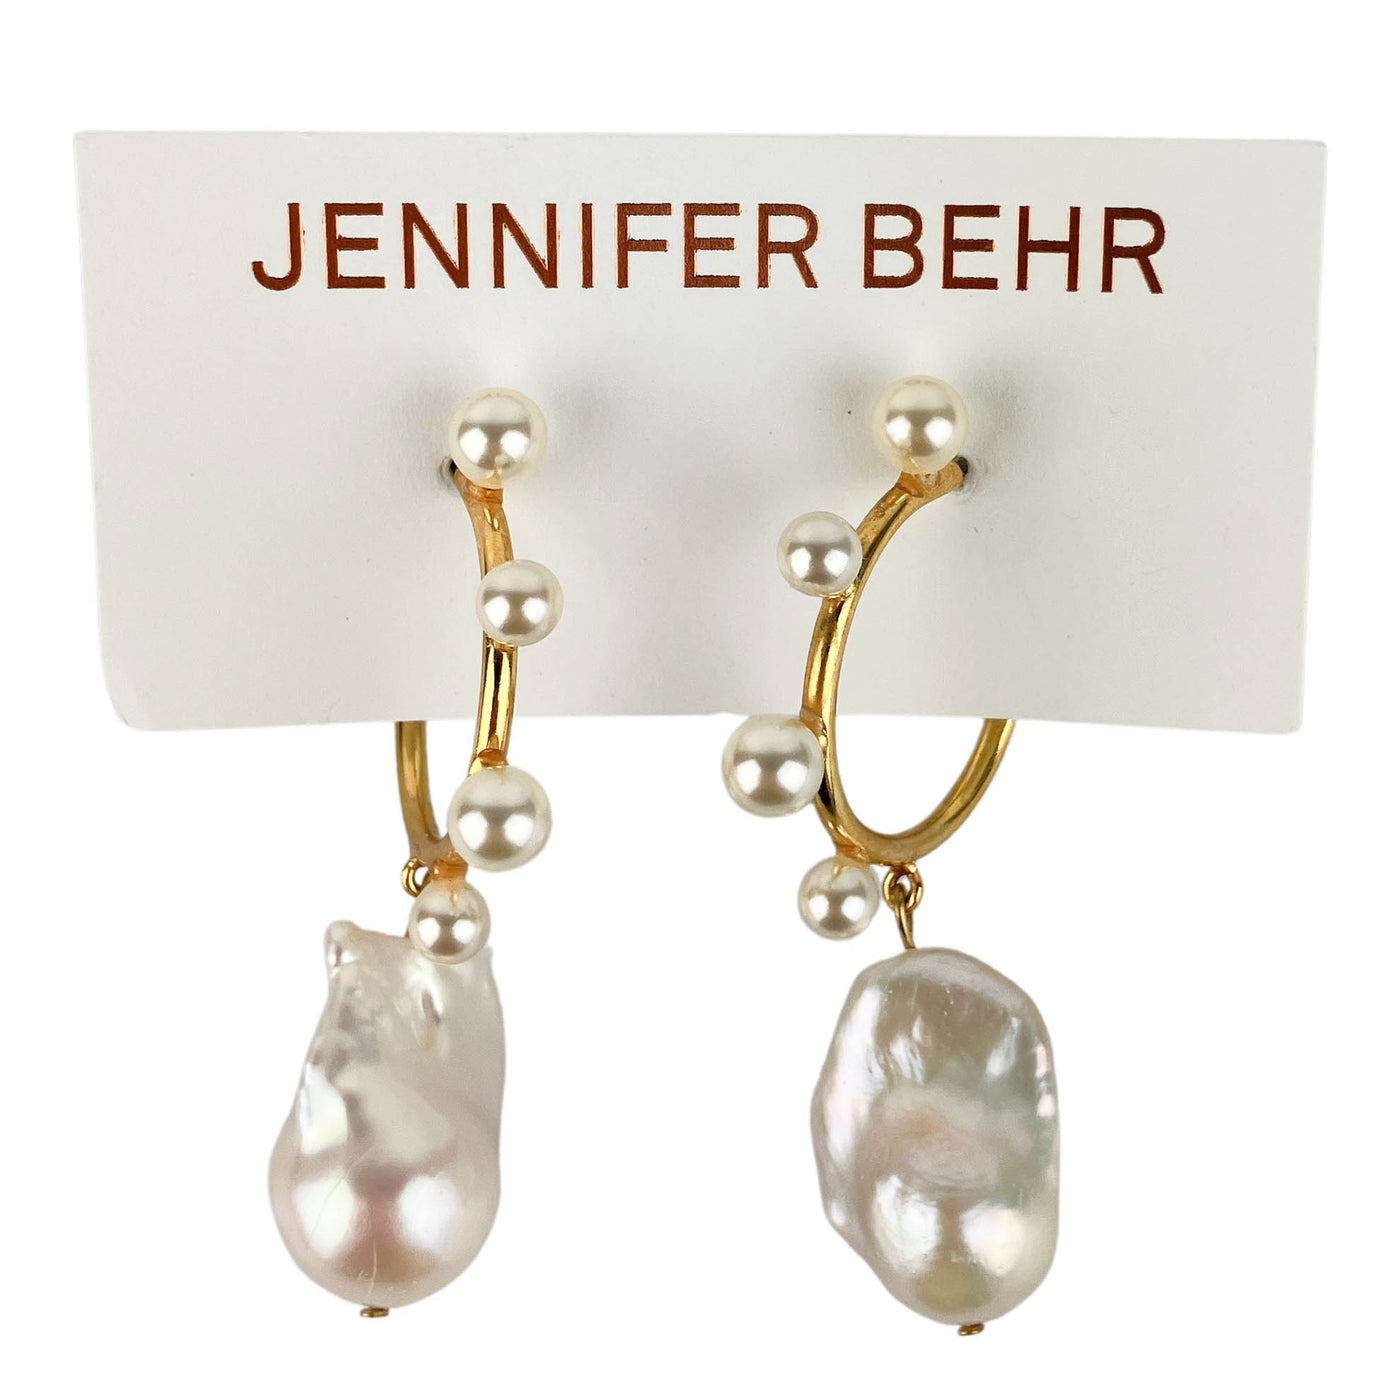 Jennifer Behr Yohana Hoop Earrings in Gold/Pearl - Discounts on Jennifer Behr at UAL